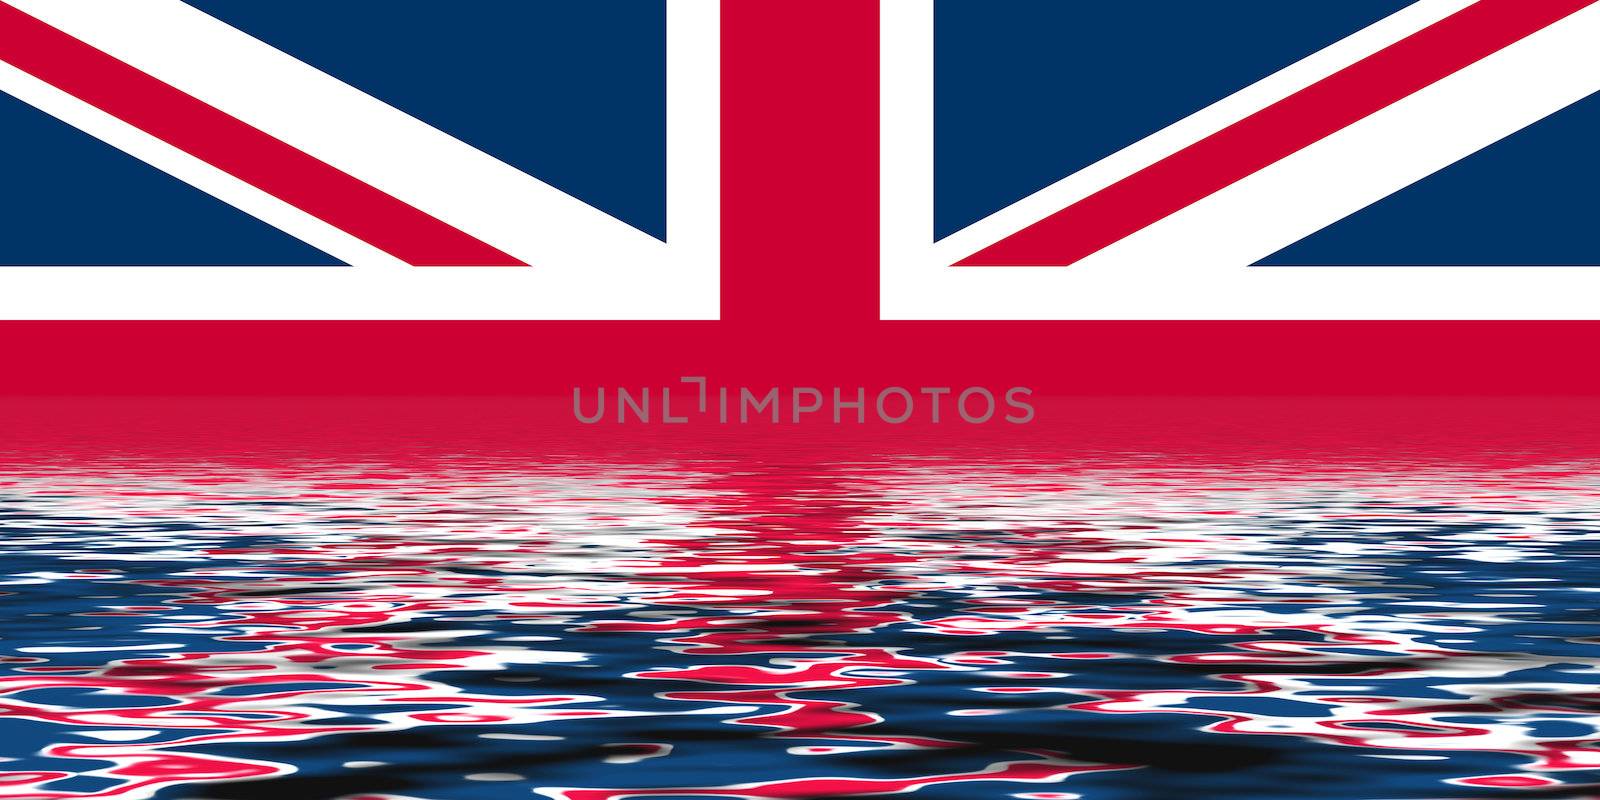 Union Jack flag of the UK with water symbolising flood